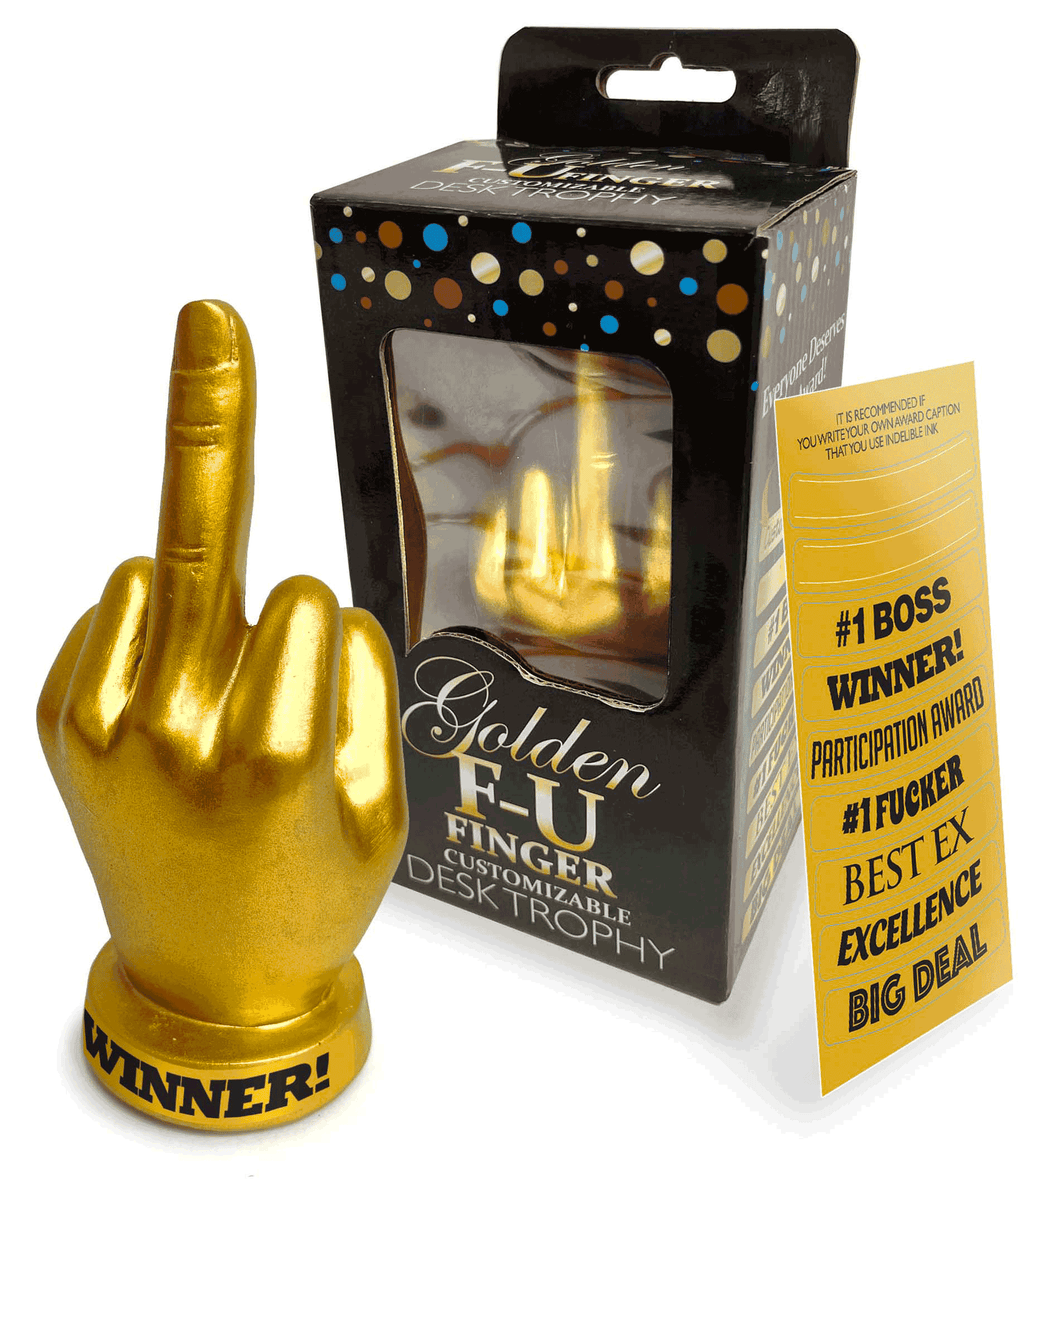 FU Finger Trophy